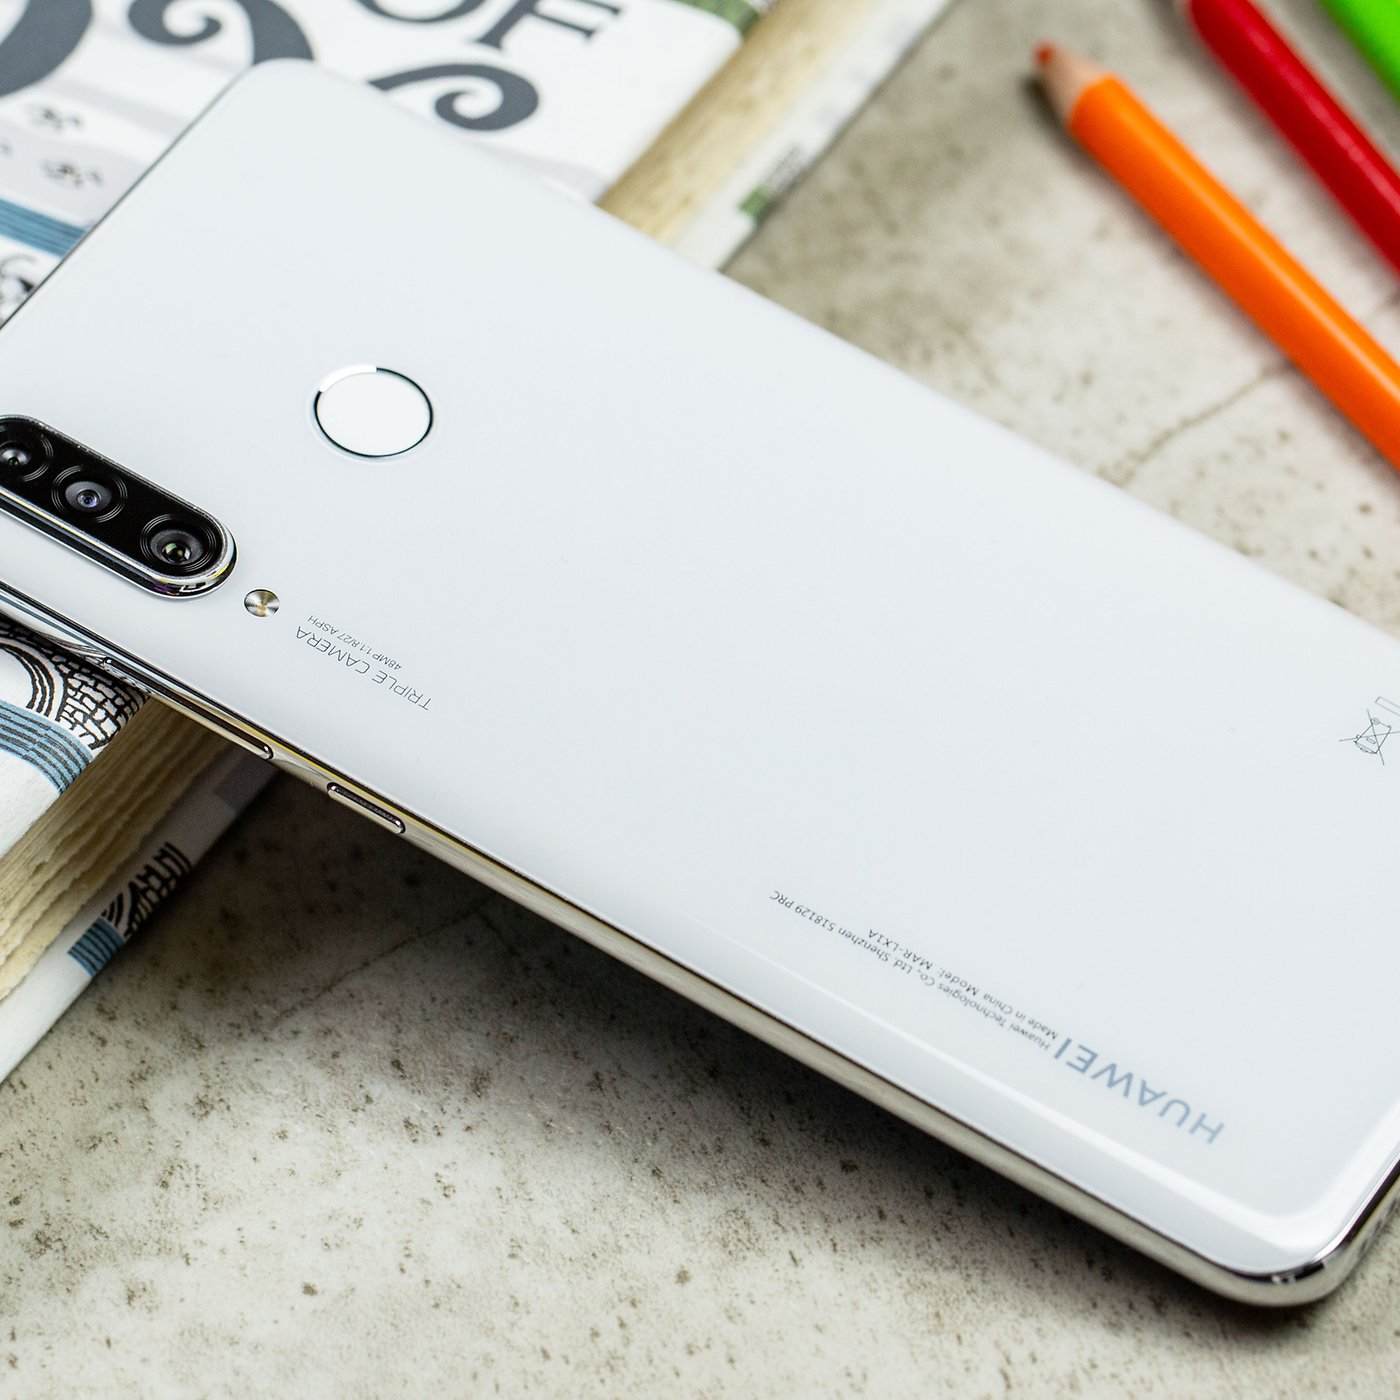 キャリアア ANDROID - Huawei P30 lite Pearl White 新品 未開封の通販 ...